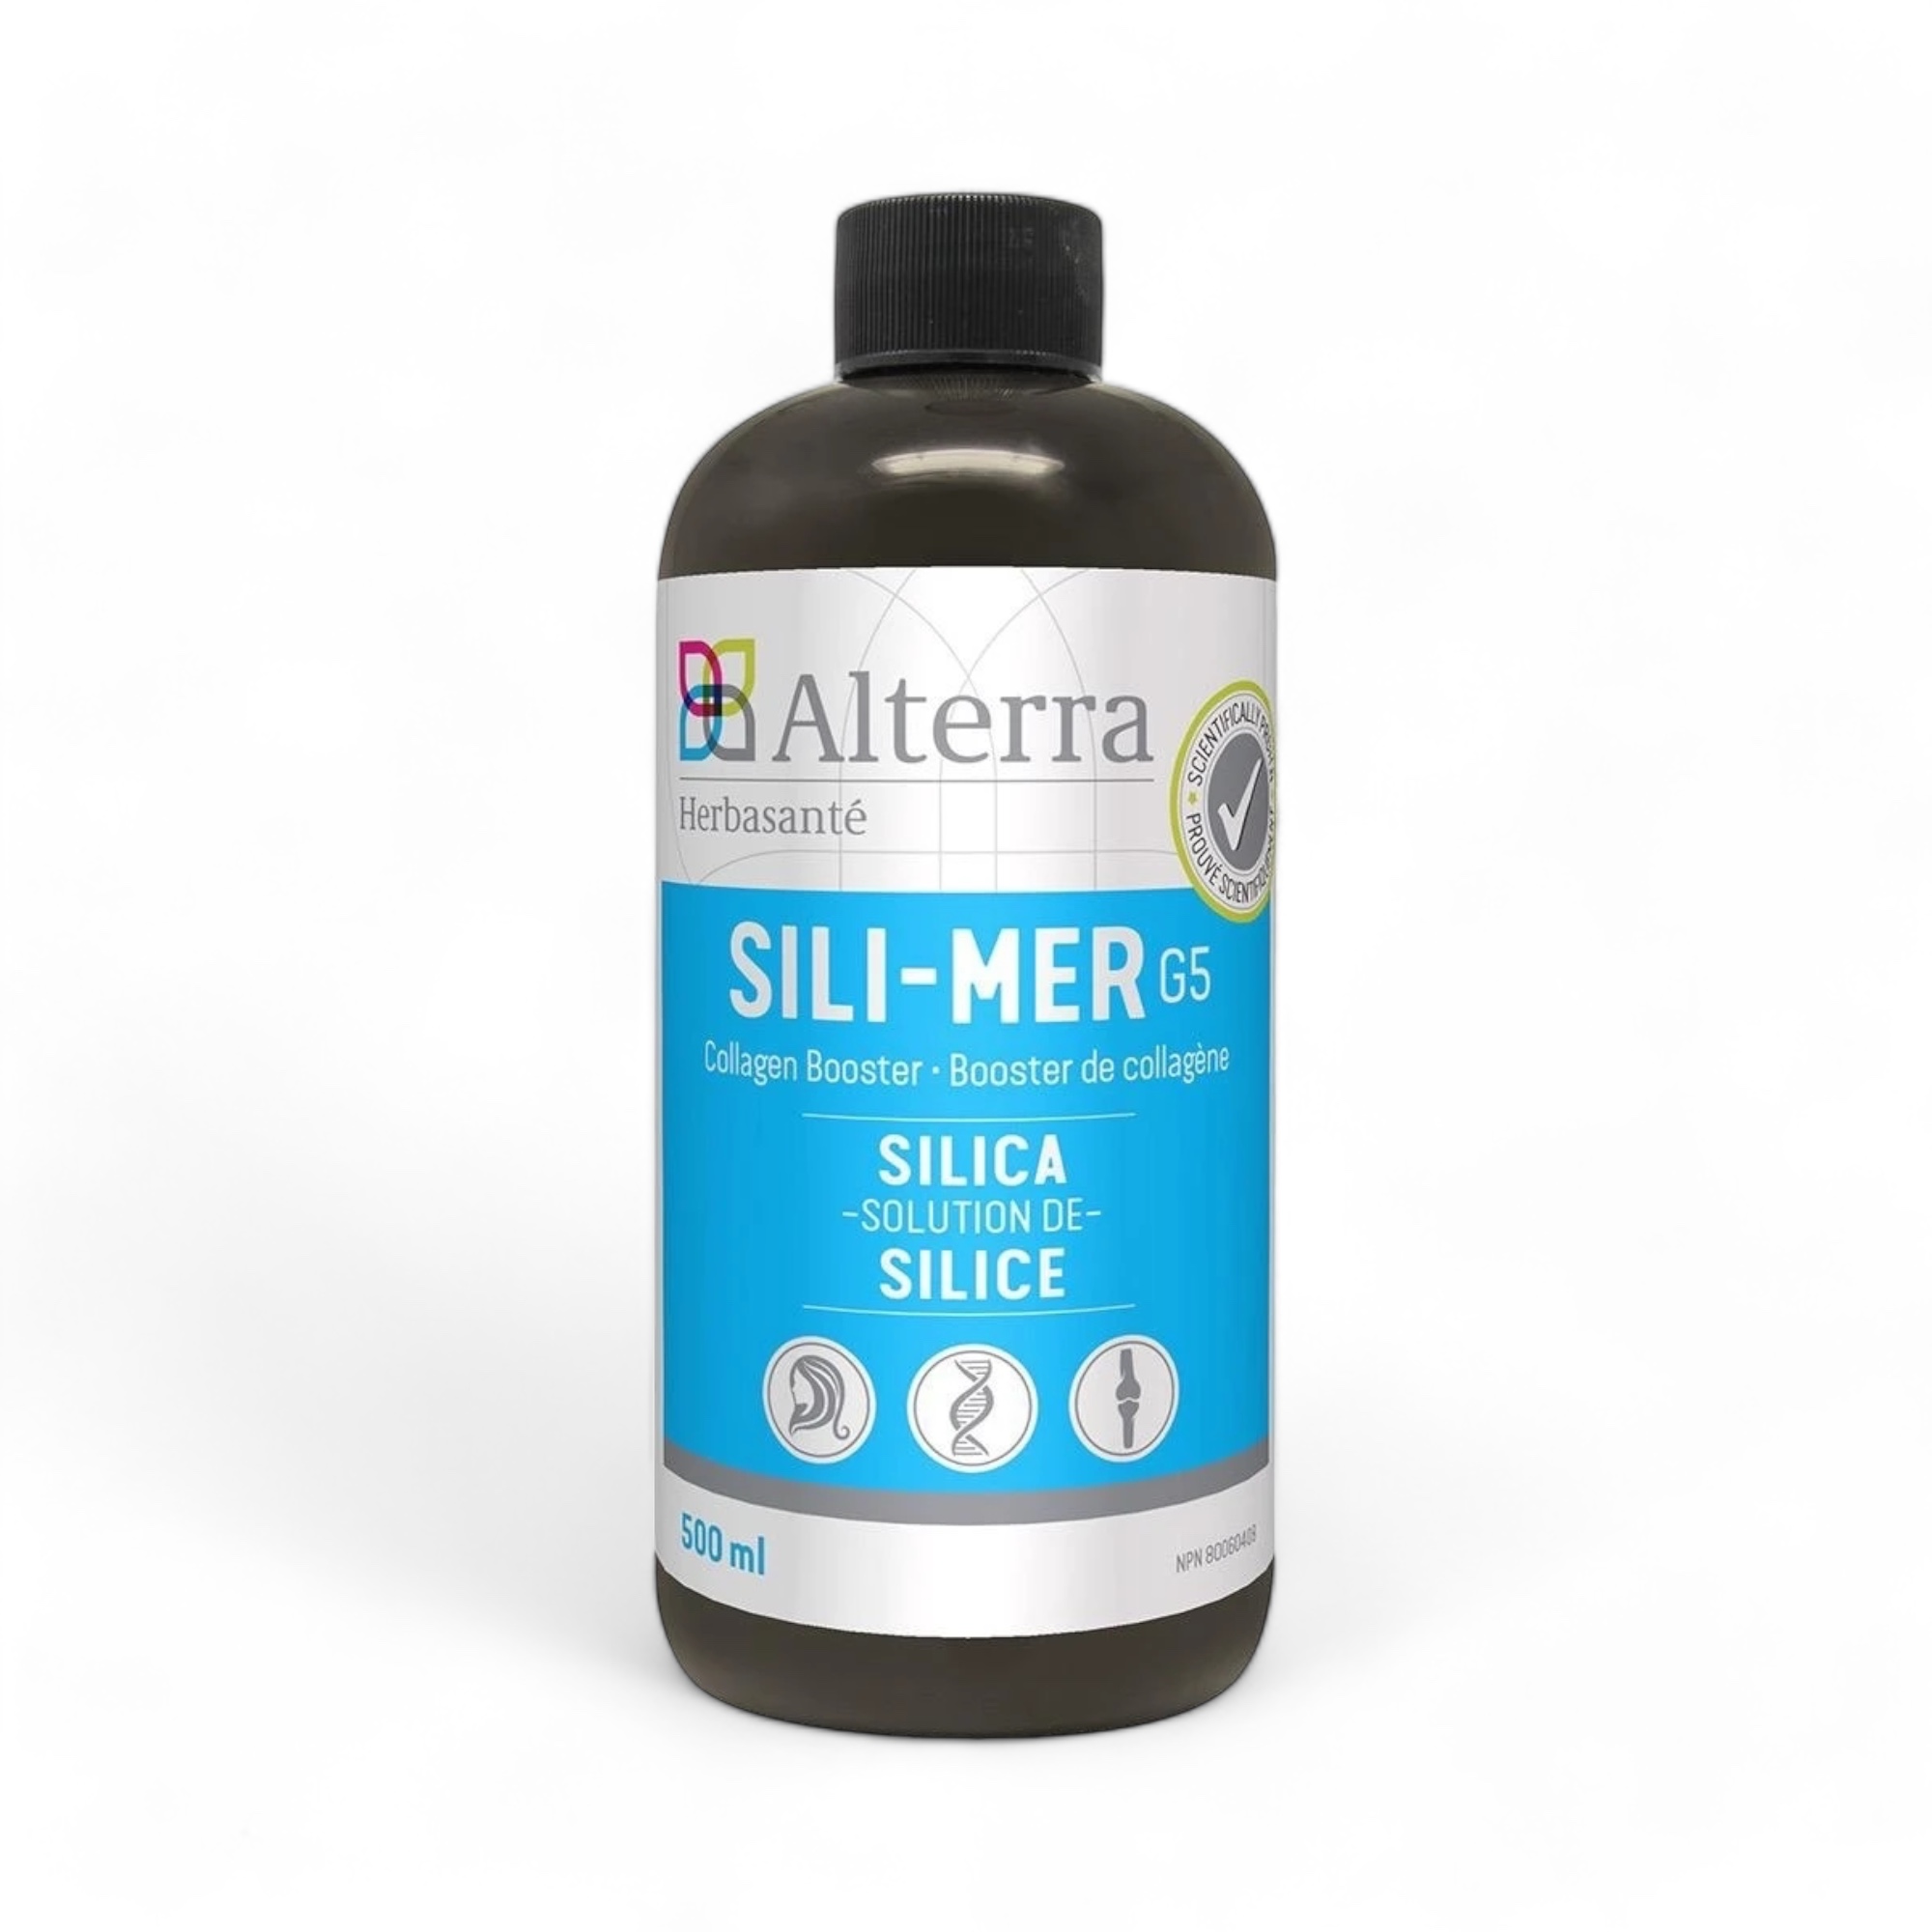 Sili-Mer G5 (500 ml) Solution de silice Alterra